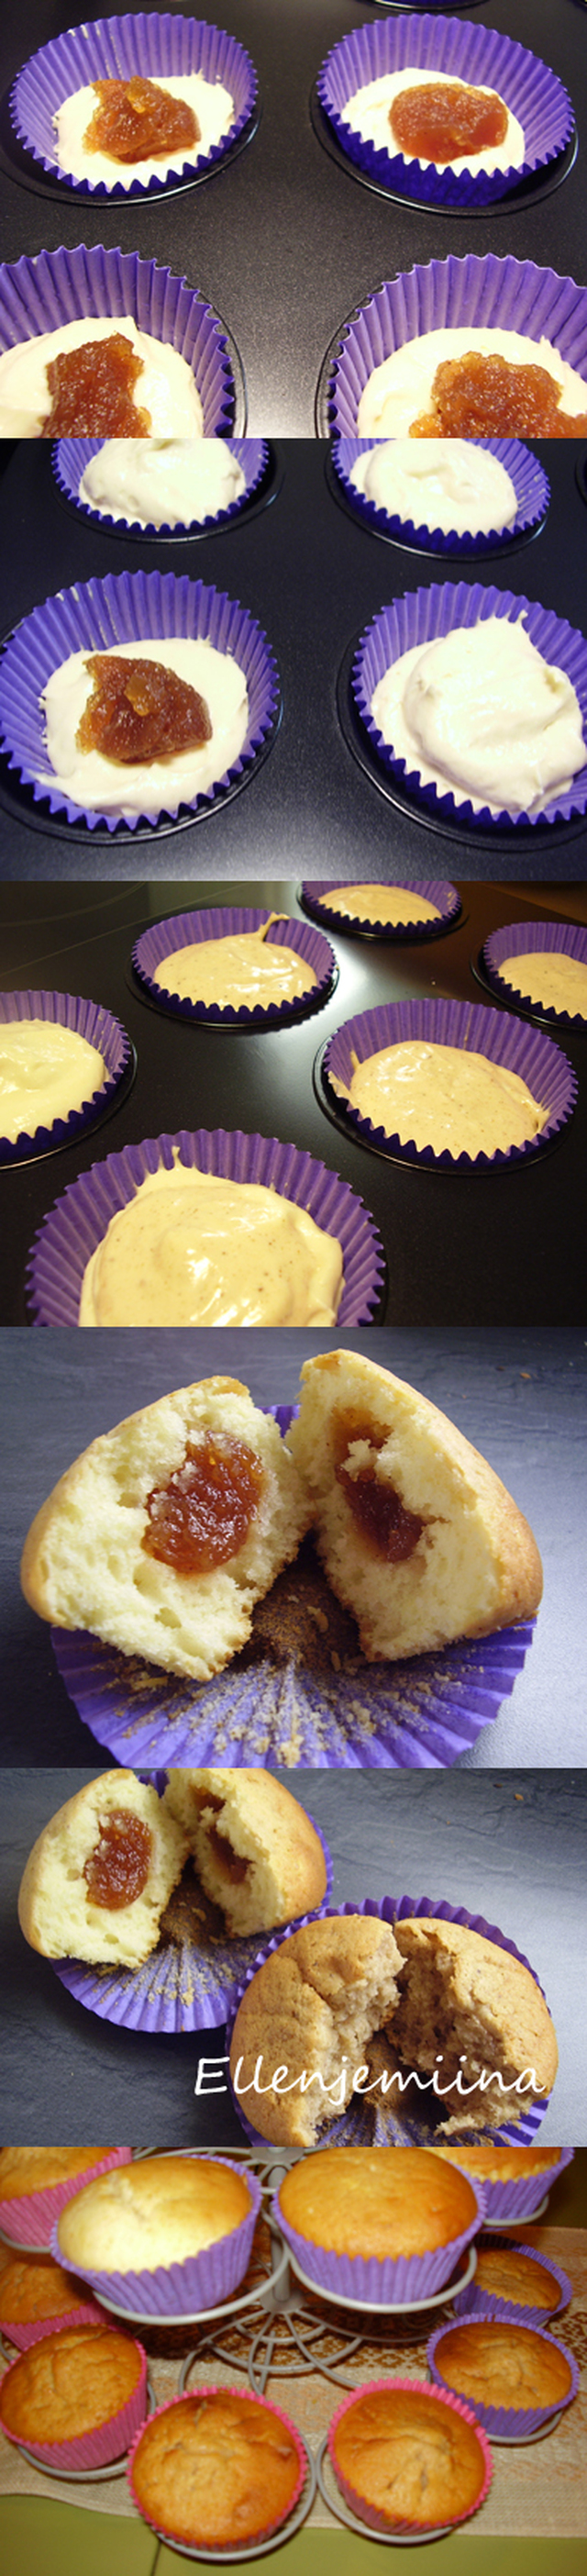 Marmeladi muffinssit